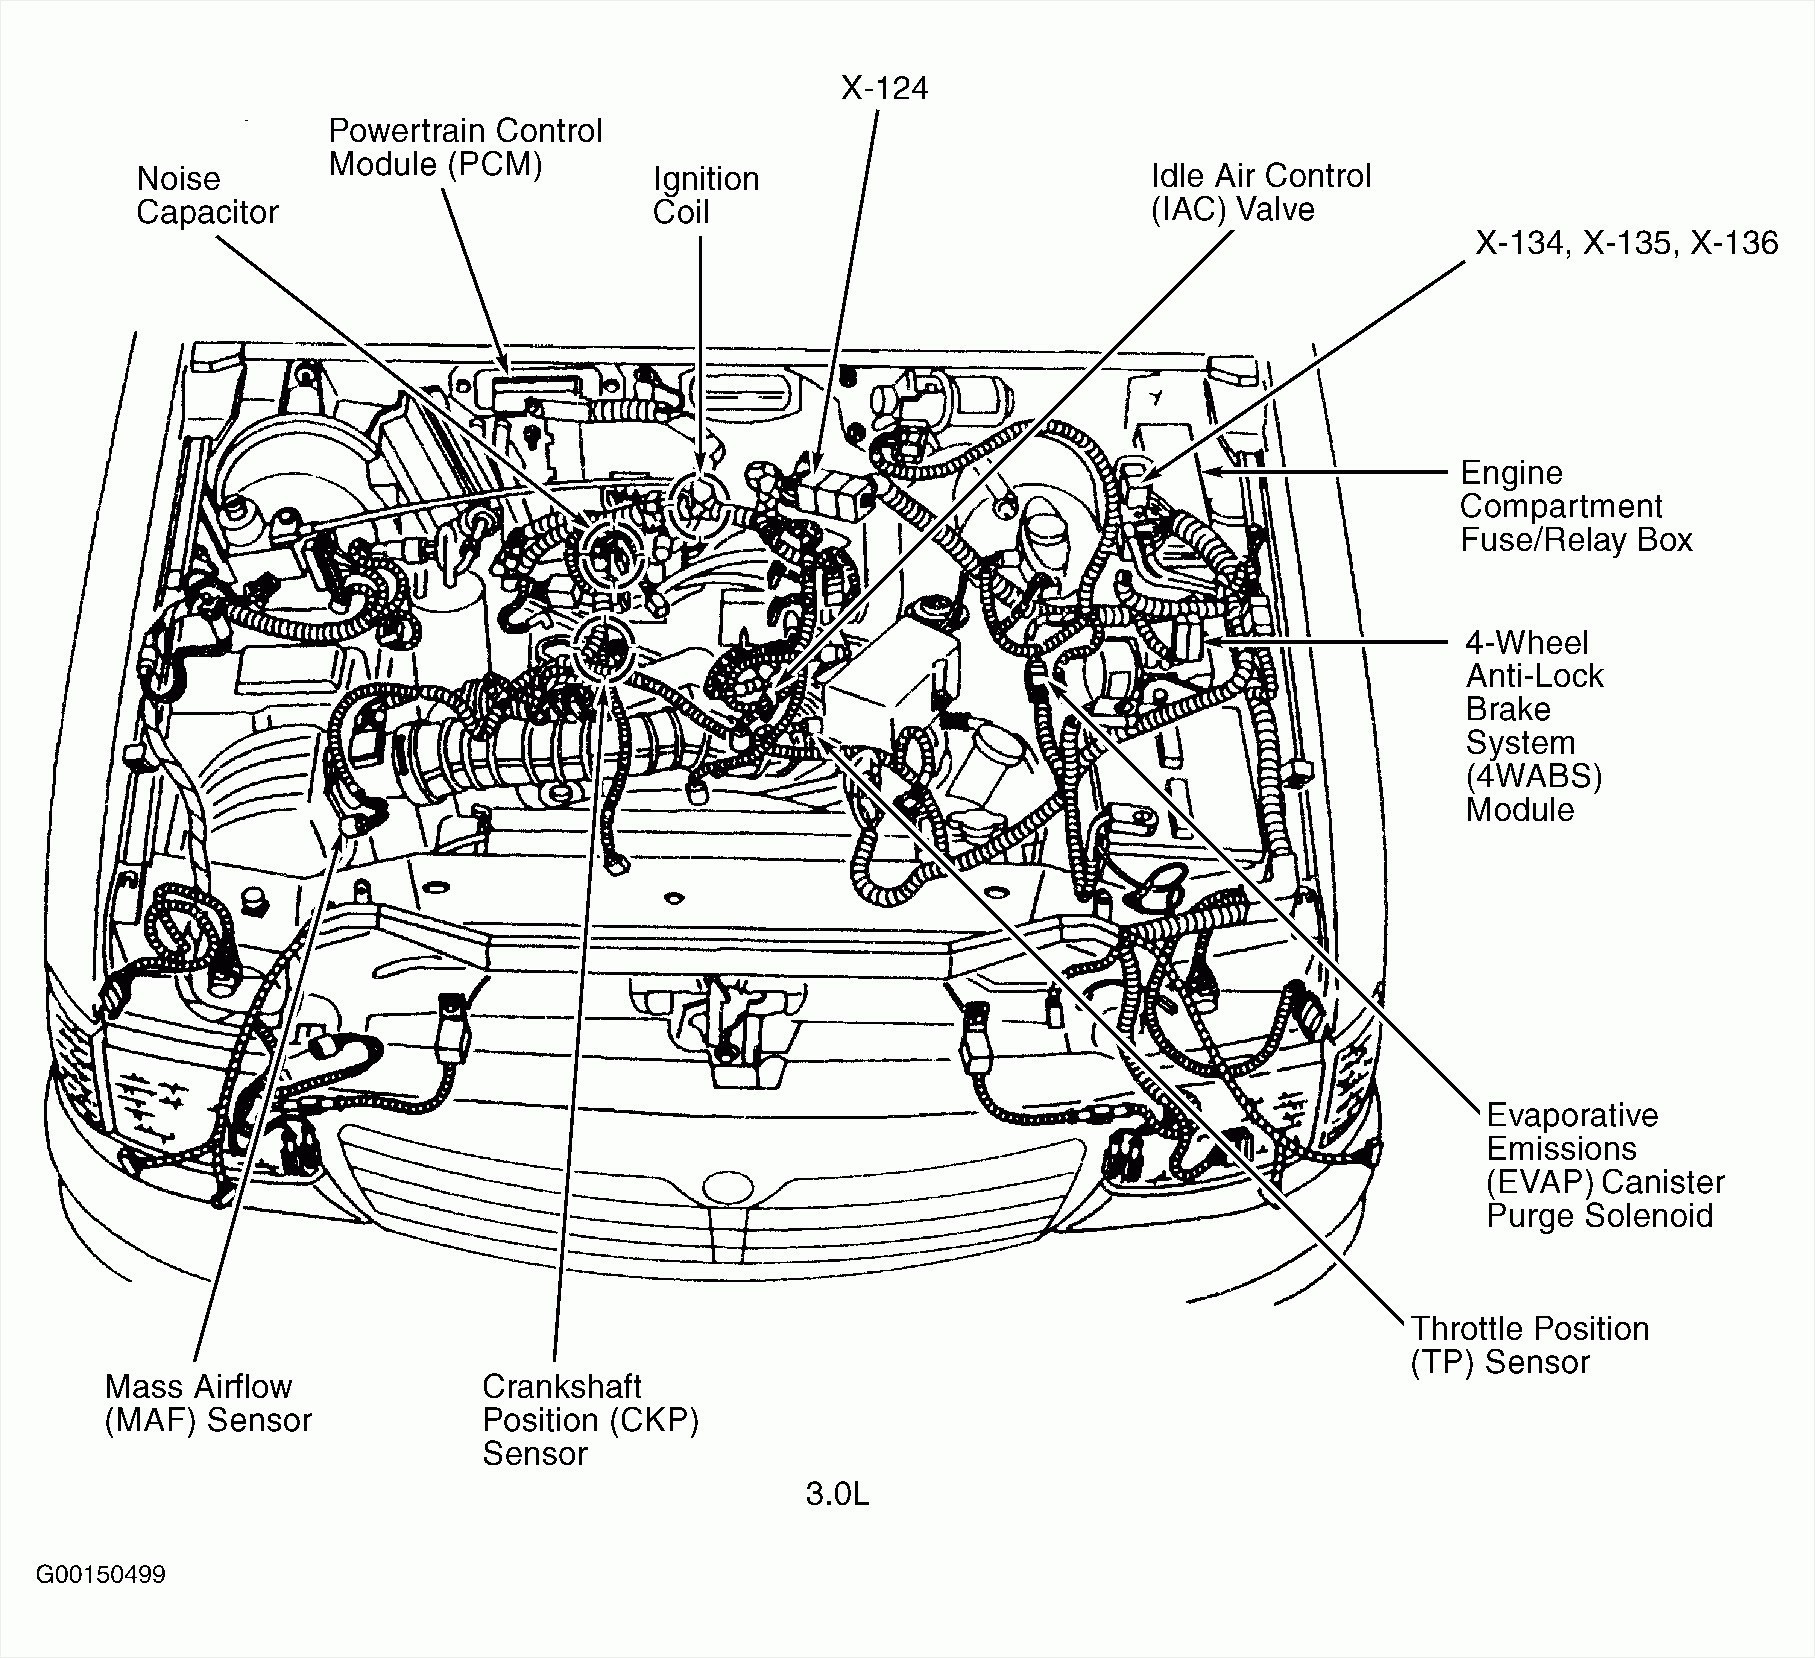 1994 ford Ranger Engine Diagram 2000 ford Taurus 3 0 Vacuum Diagram Wiring Diagram Options Of 1994 ford Ranger Engine Diagram